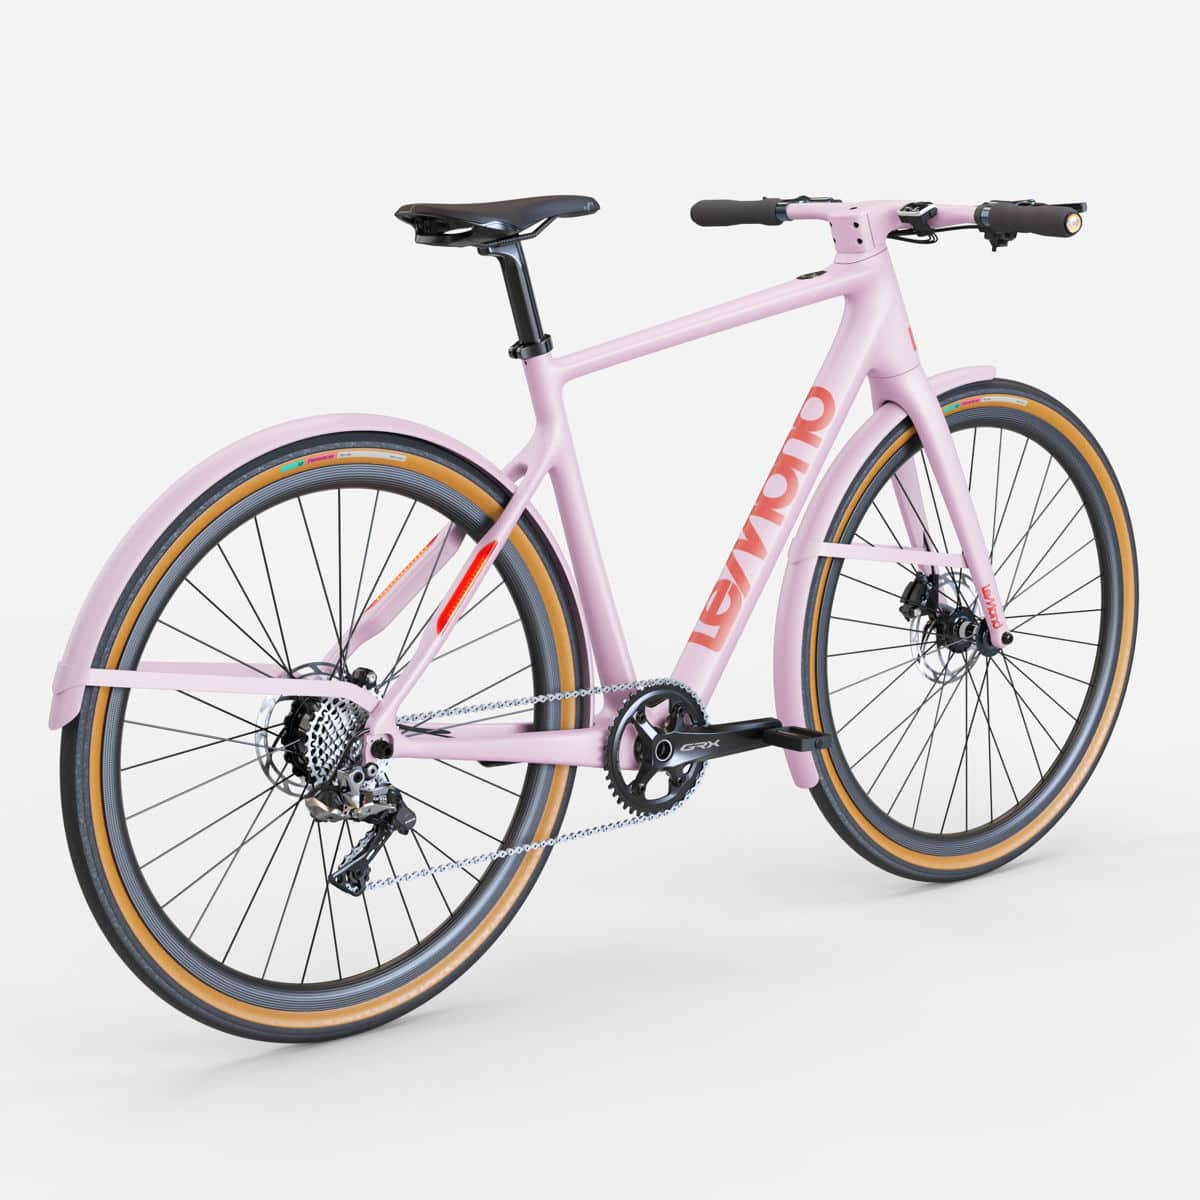 Tour de France Champion Greg LeMond Launches e-Bikes